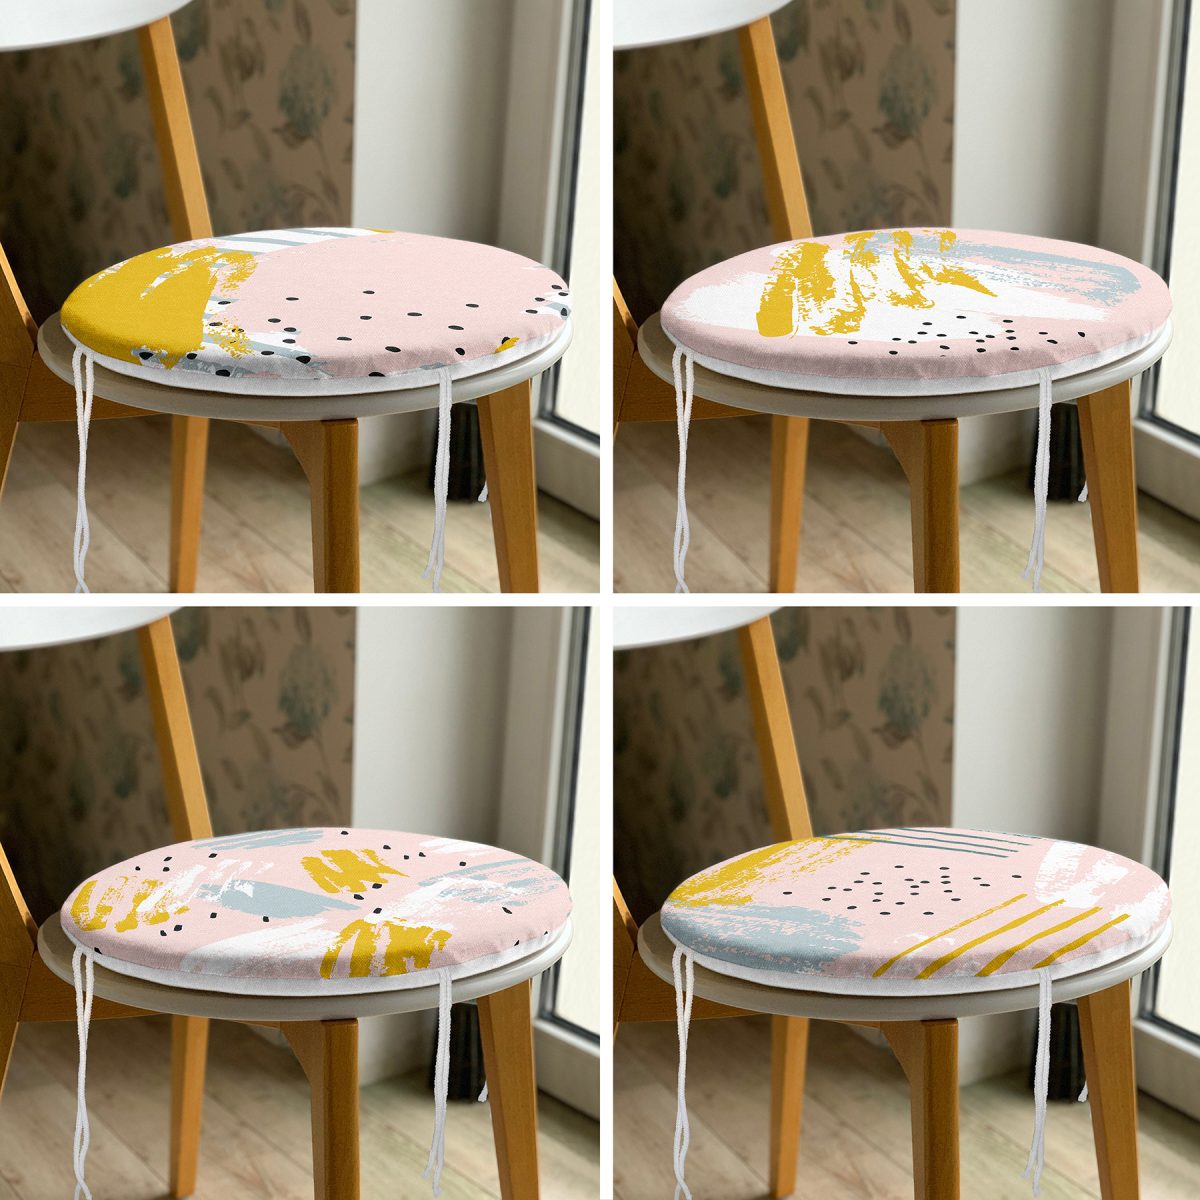 4'lü Sarı Ve Pembe Sulu Boya Fırça Darbeli Dekoratif Yuvarlak Fermuarlı Sandalye Minderi Seti Realhomes